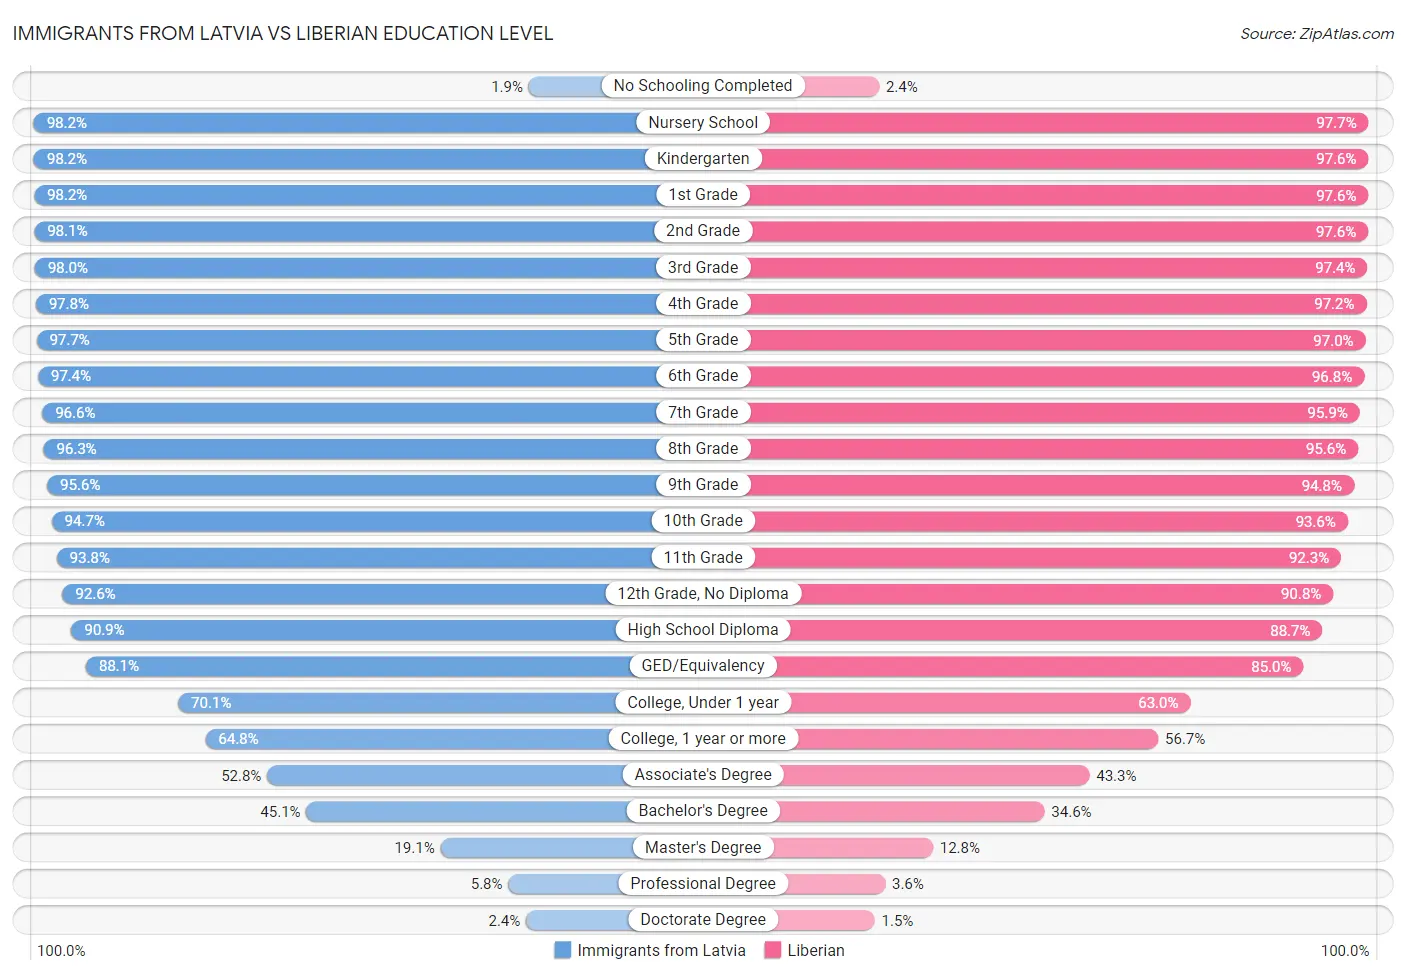 Immigrants from Latvia vs Liberian Education Level